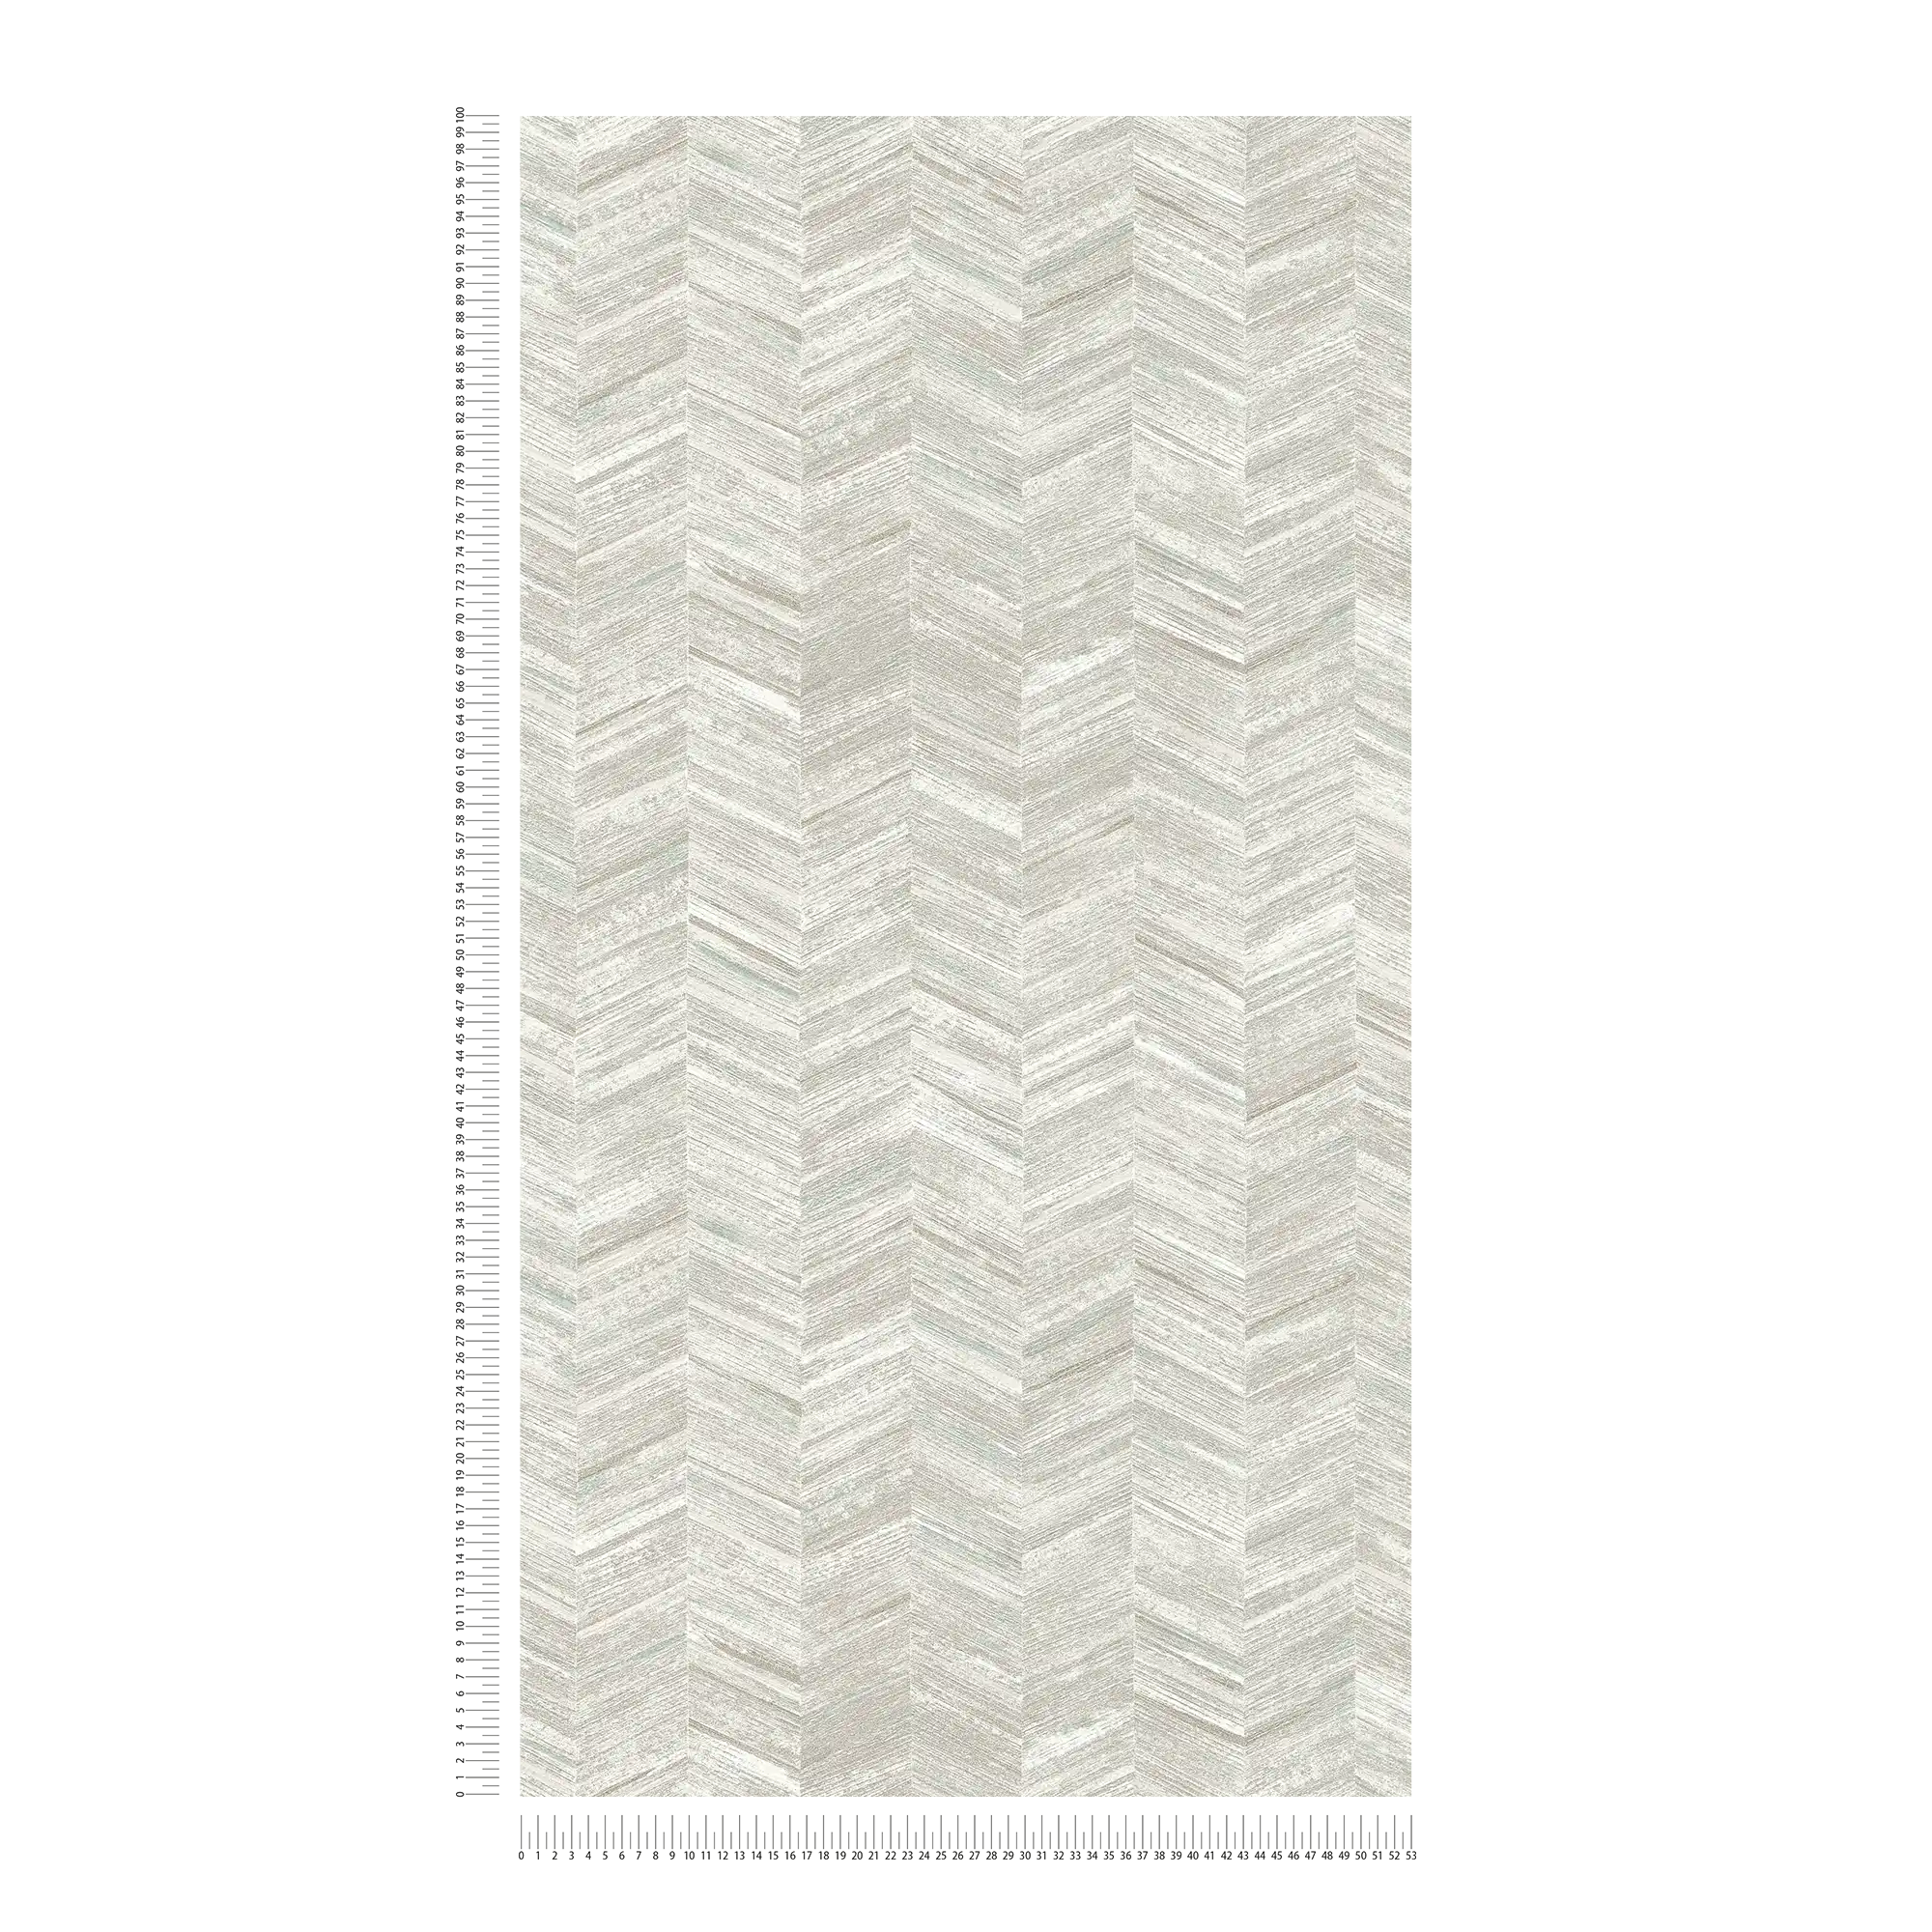             Strukturtapete Vlies mit Holzeffekt & Fischgrätmuster – Grau, Weiß
        